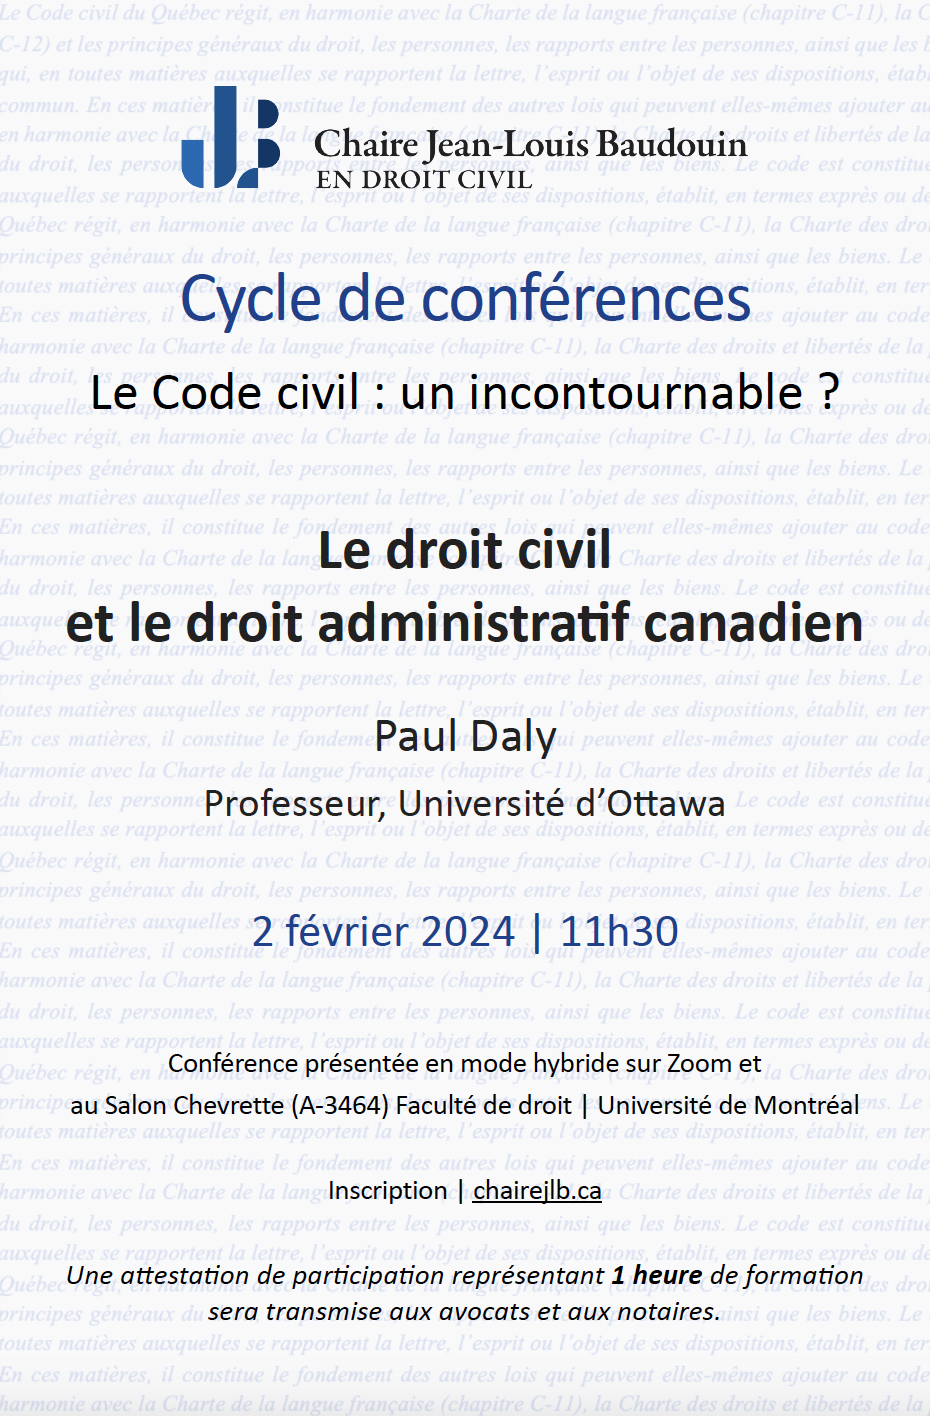 Le droit civil et le droit administratif canadien », Professeur Paul Daly, 2 février 2024